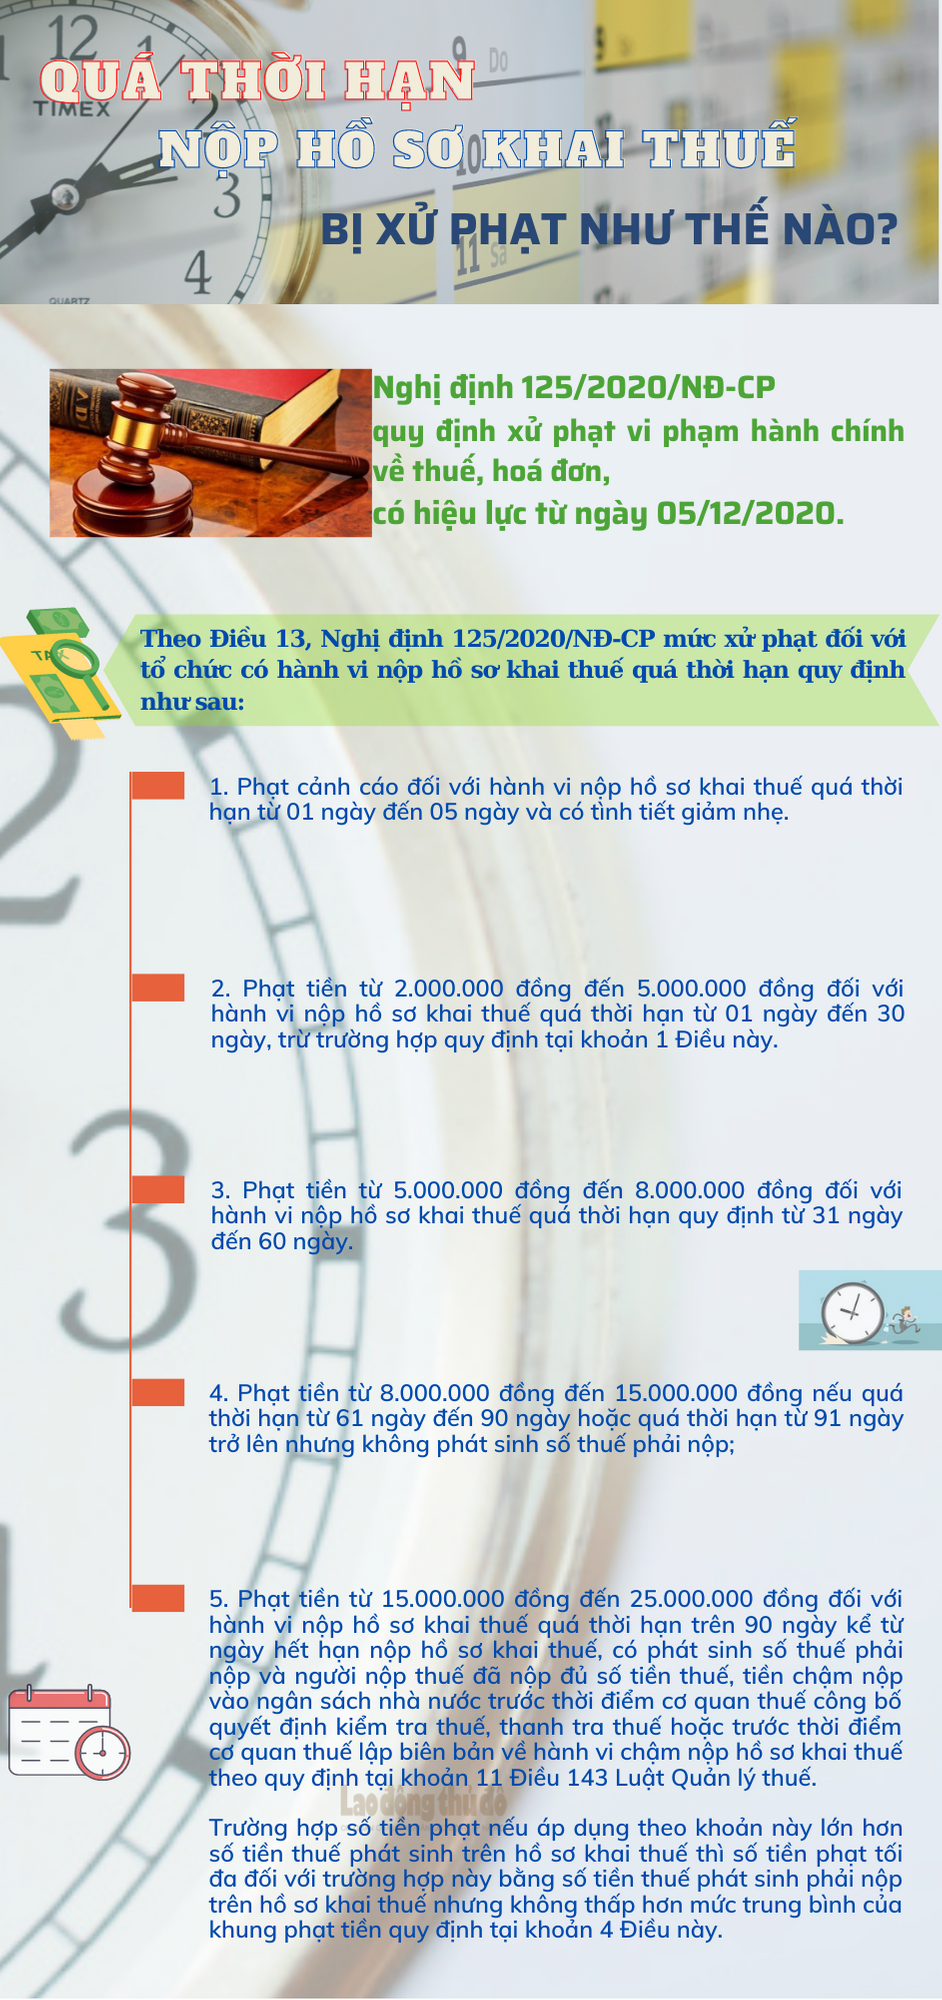 Infographic: Quá thời hạn nộp hồ sơ khai thuế bị xử phạt như thế nào?